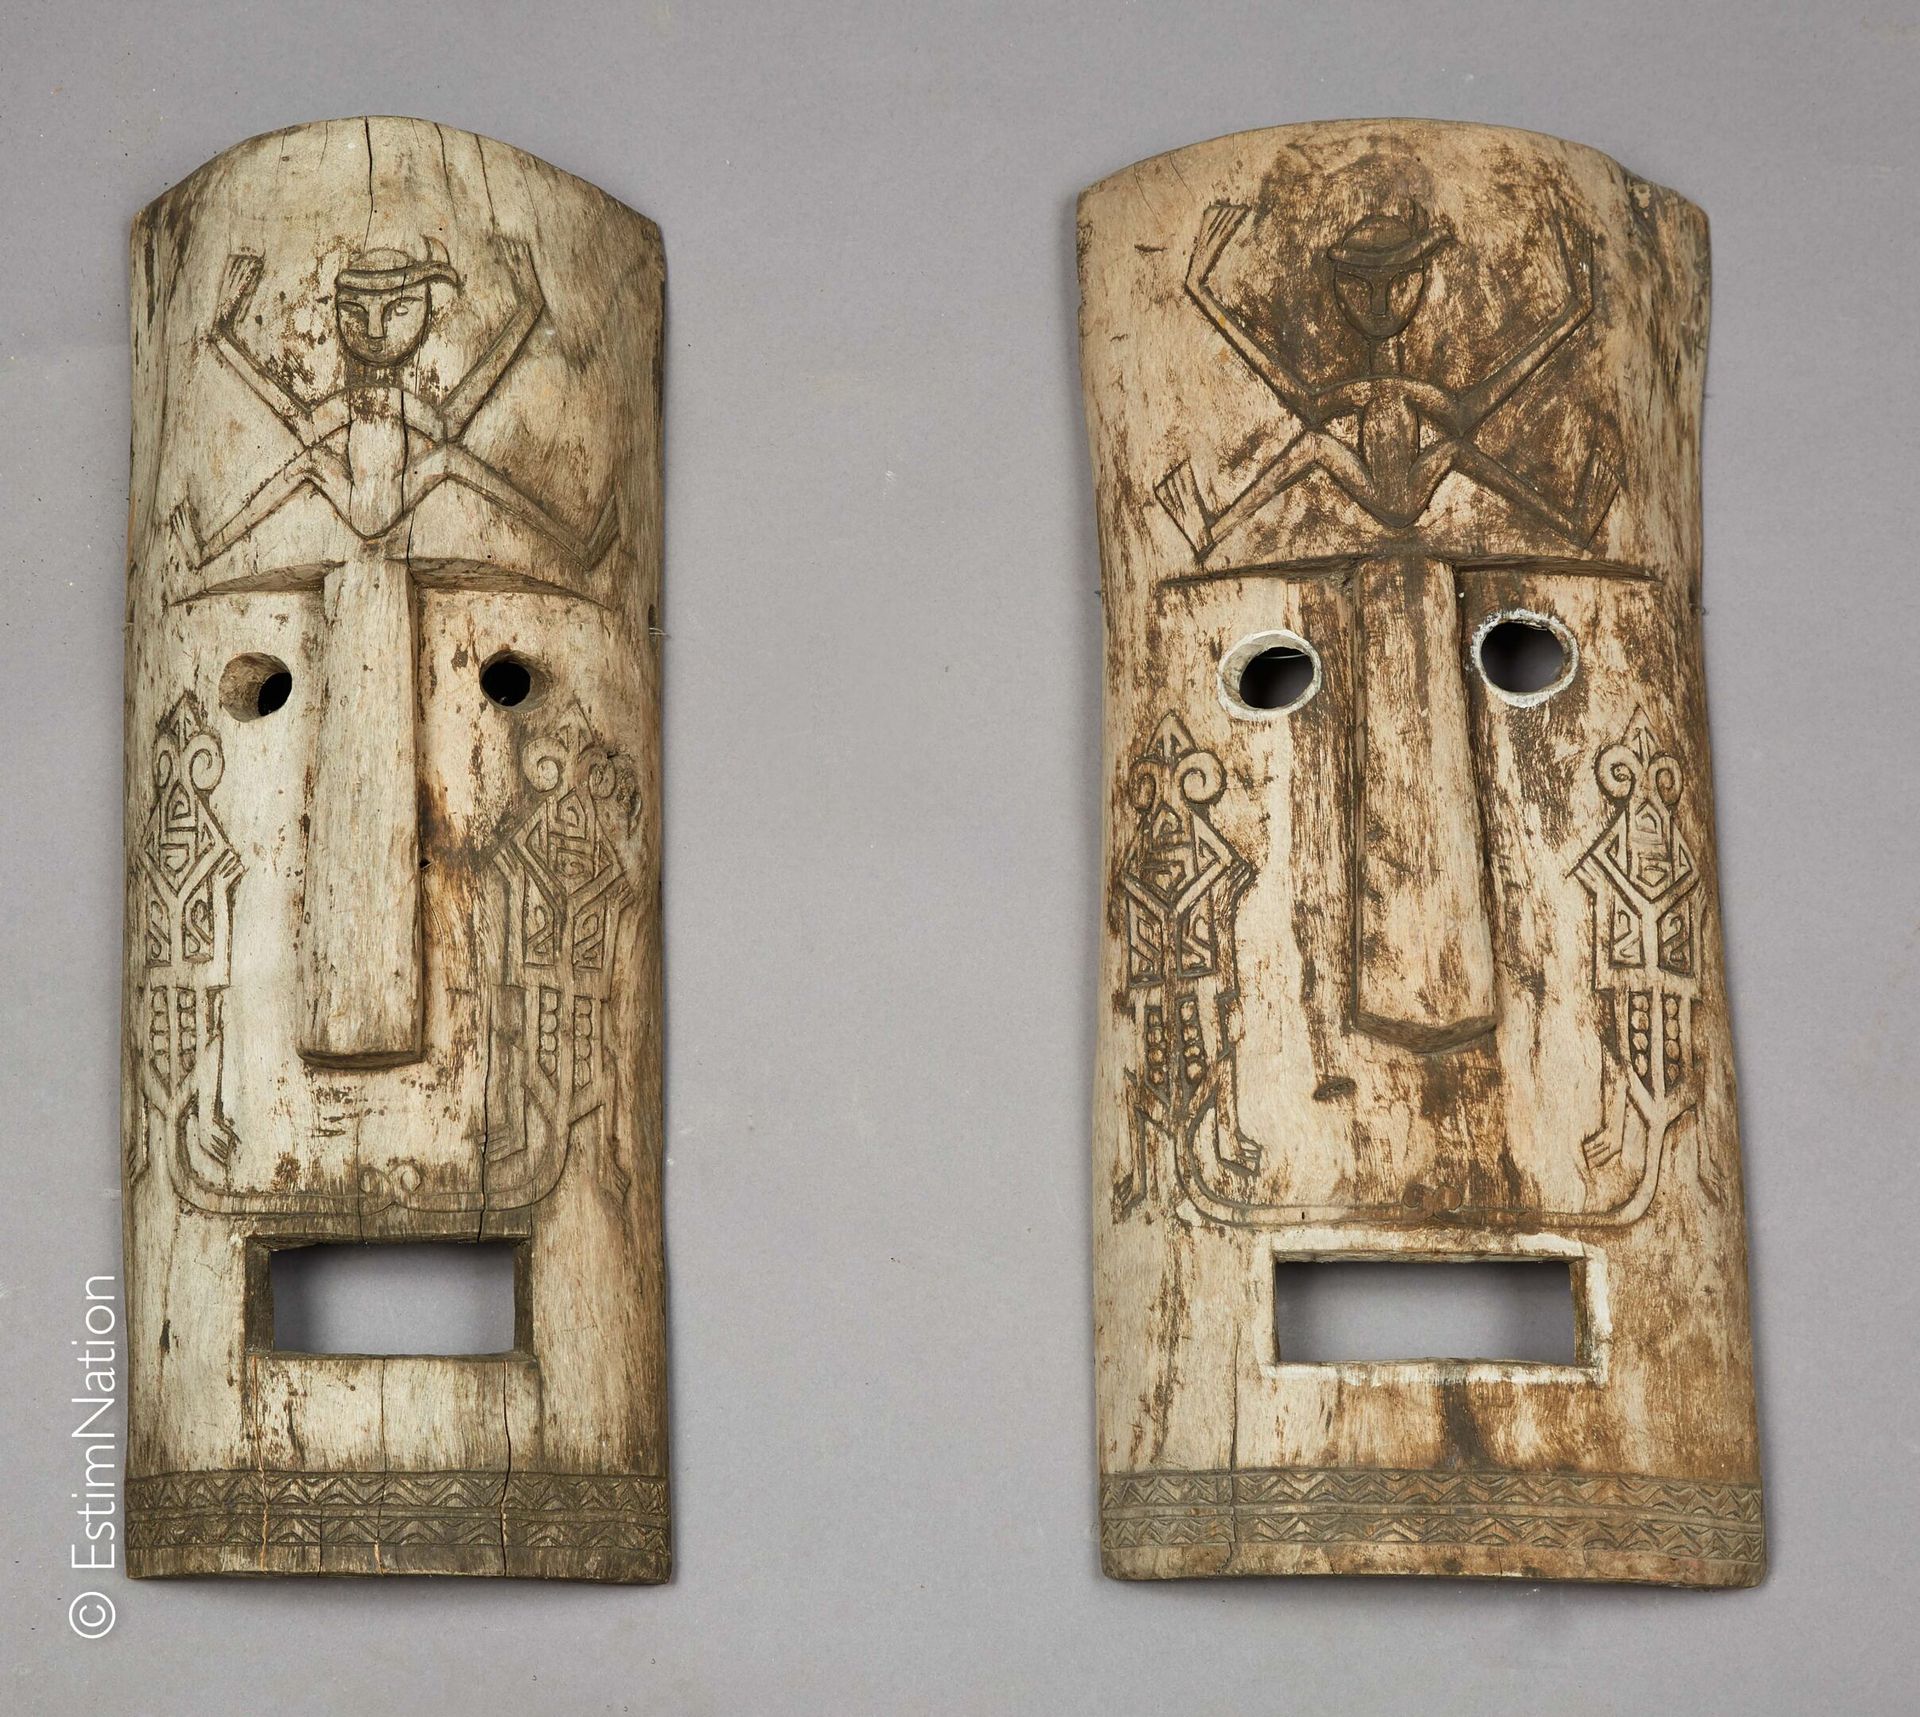 SUMATRA SUMATRA



Pair of carved and patinated wooden masks simulating grimacin&hellip;